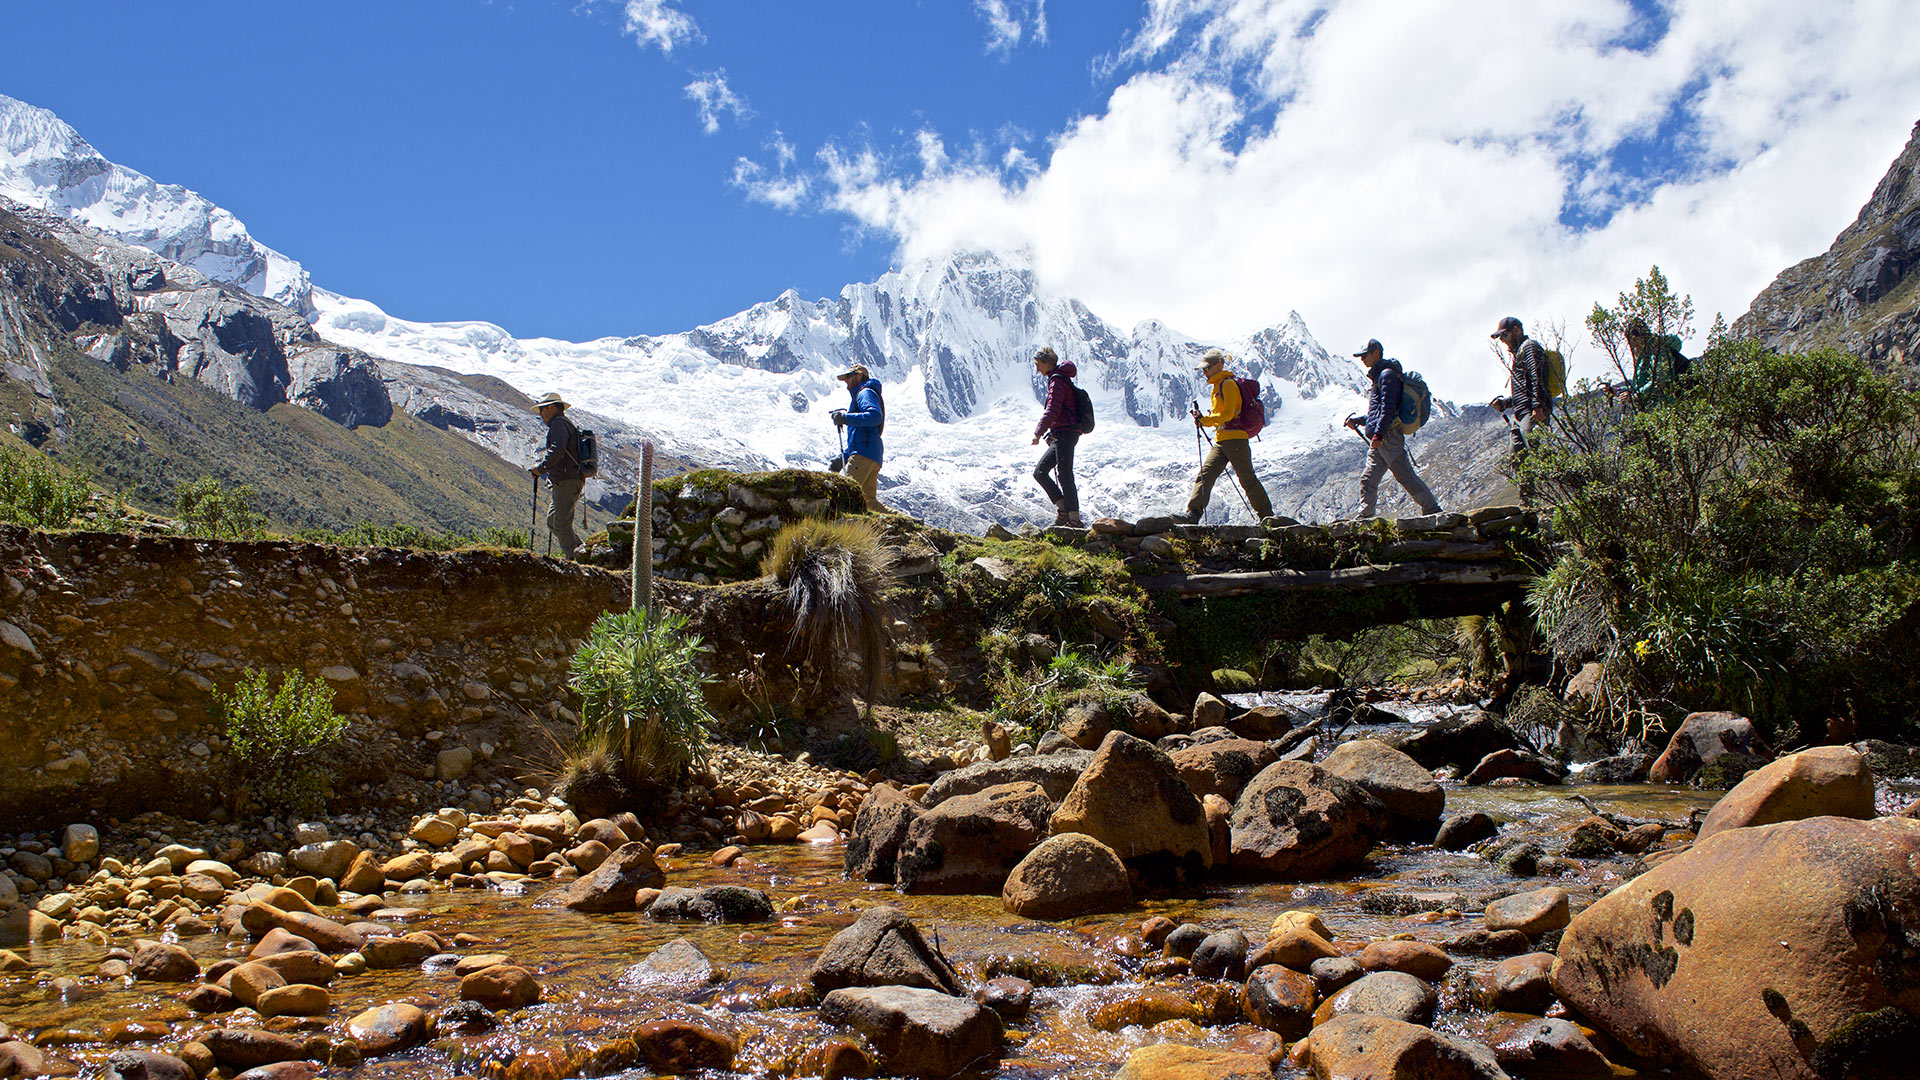 Percorsi di trekking attraverso gli altopiani peruviani